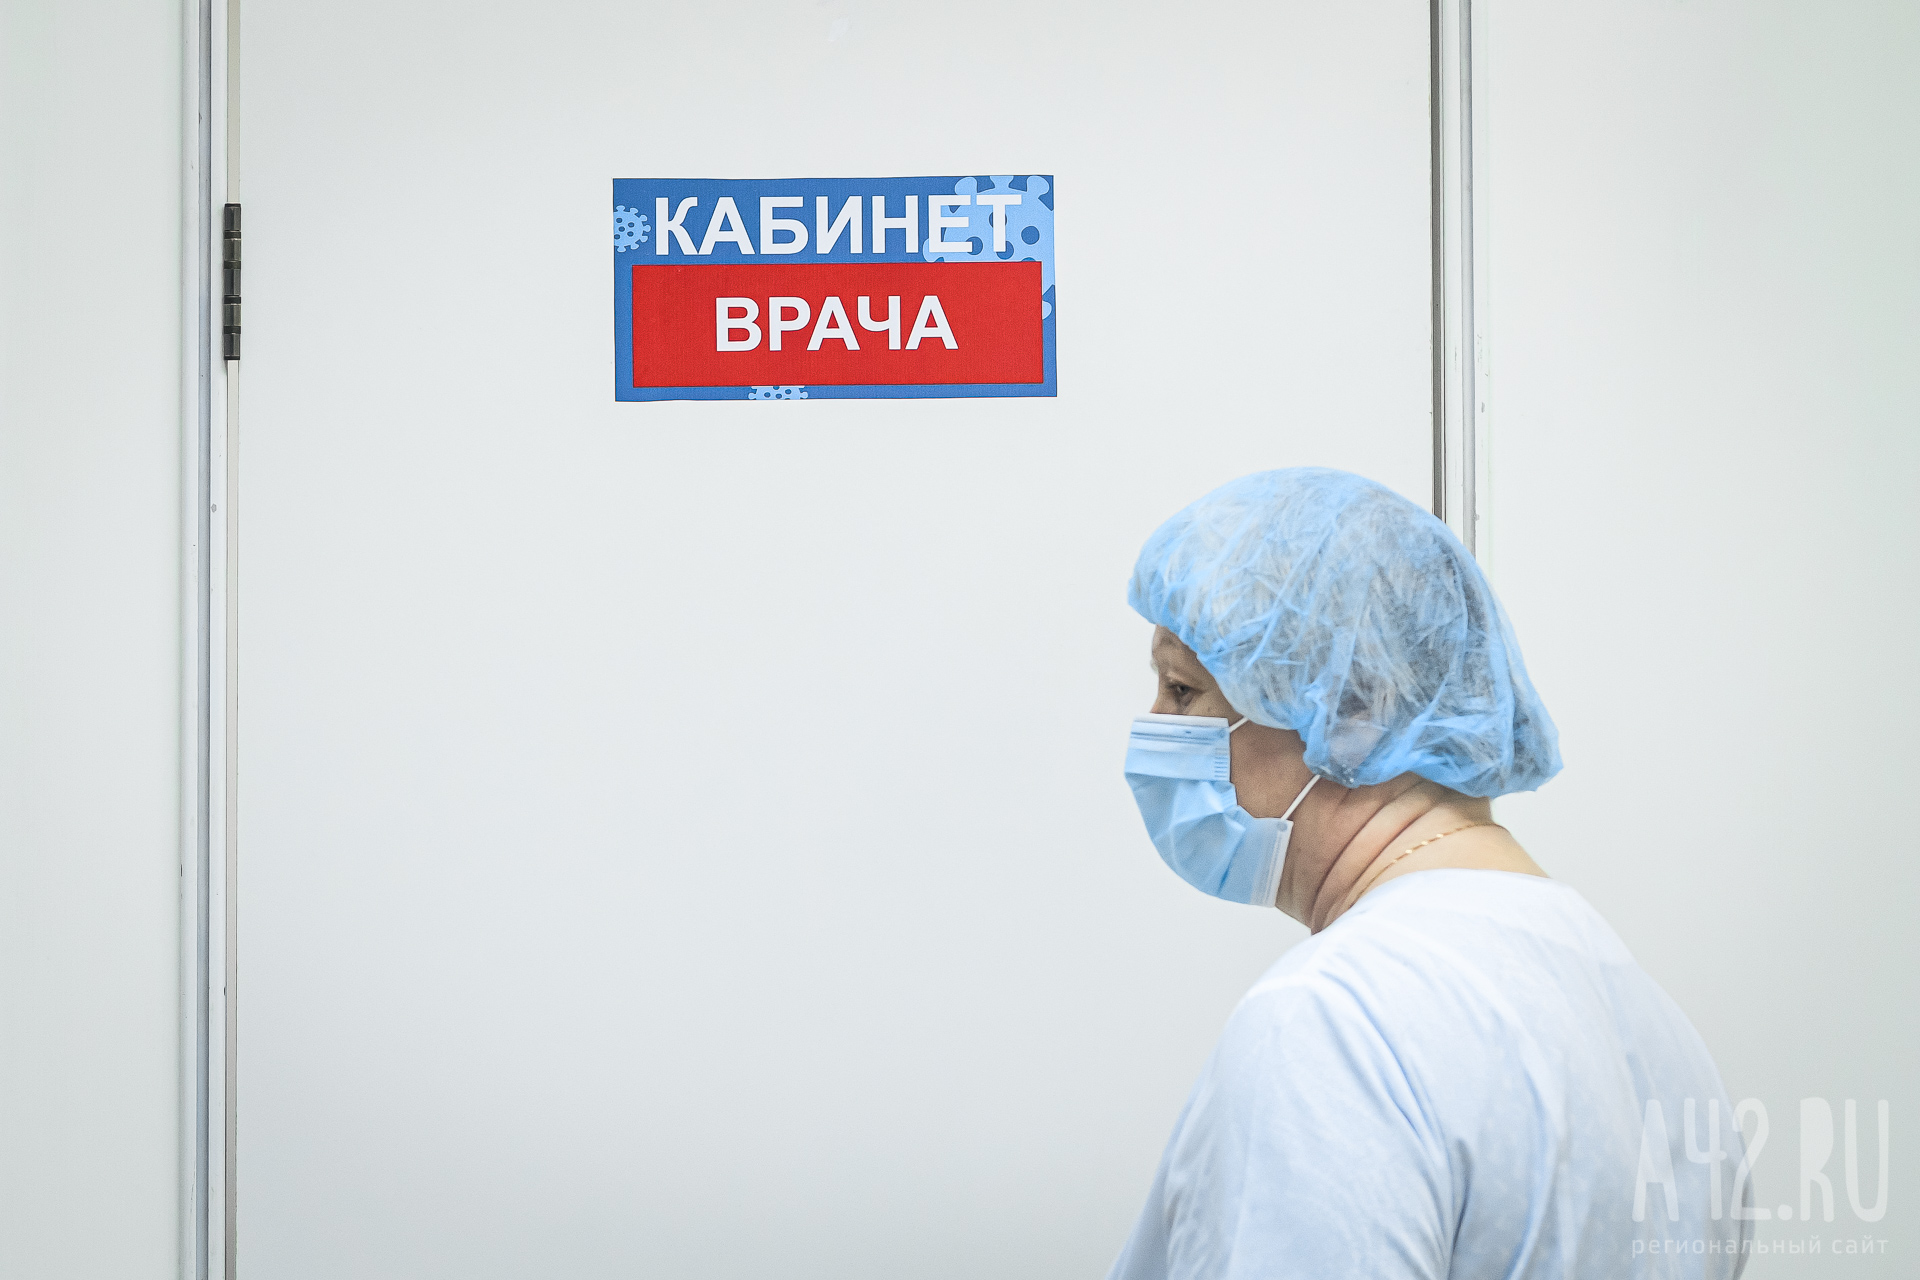 Мэр Новокузнецка сообщил о закрытии поликлиники из-за капремонта